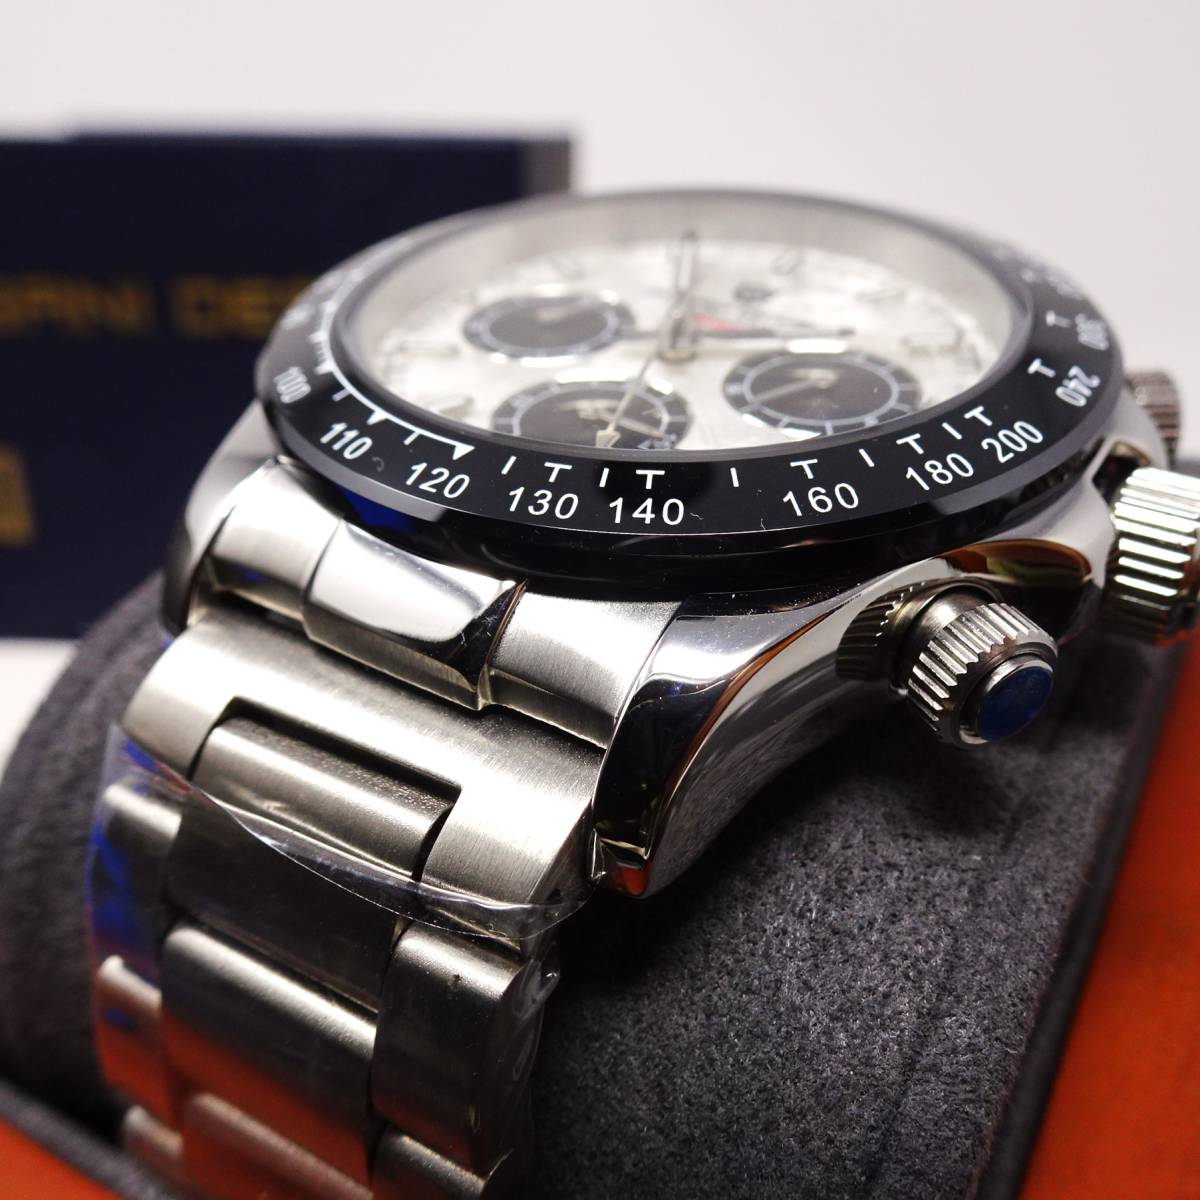 送料無料・新品・パガーニデザイン・メンズ・セイコー製VK63クロノグラフクオーツ式腕時計・フルメタル・オマージュウオッチ・PD-1664 _画像5